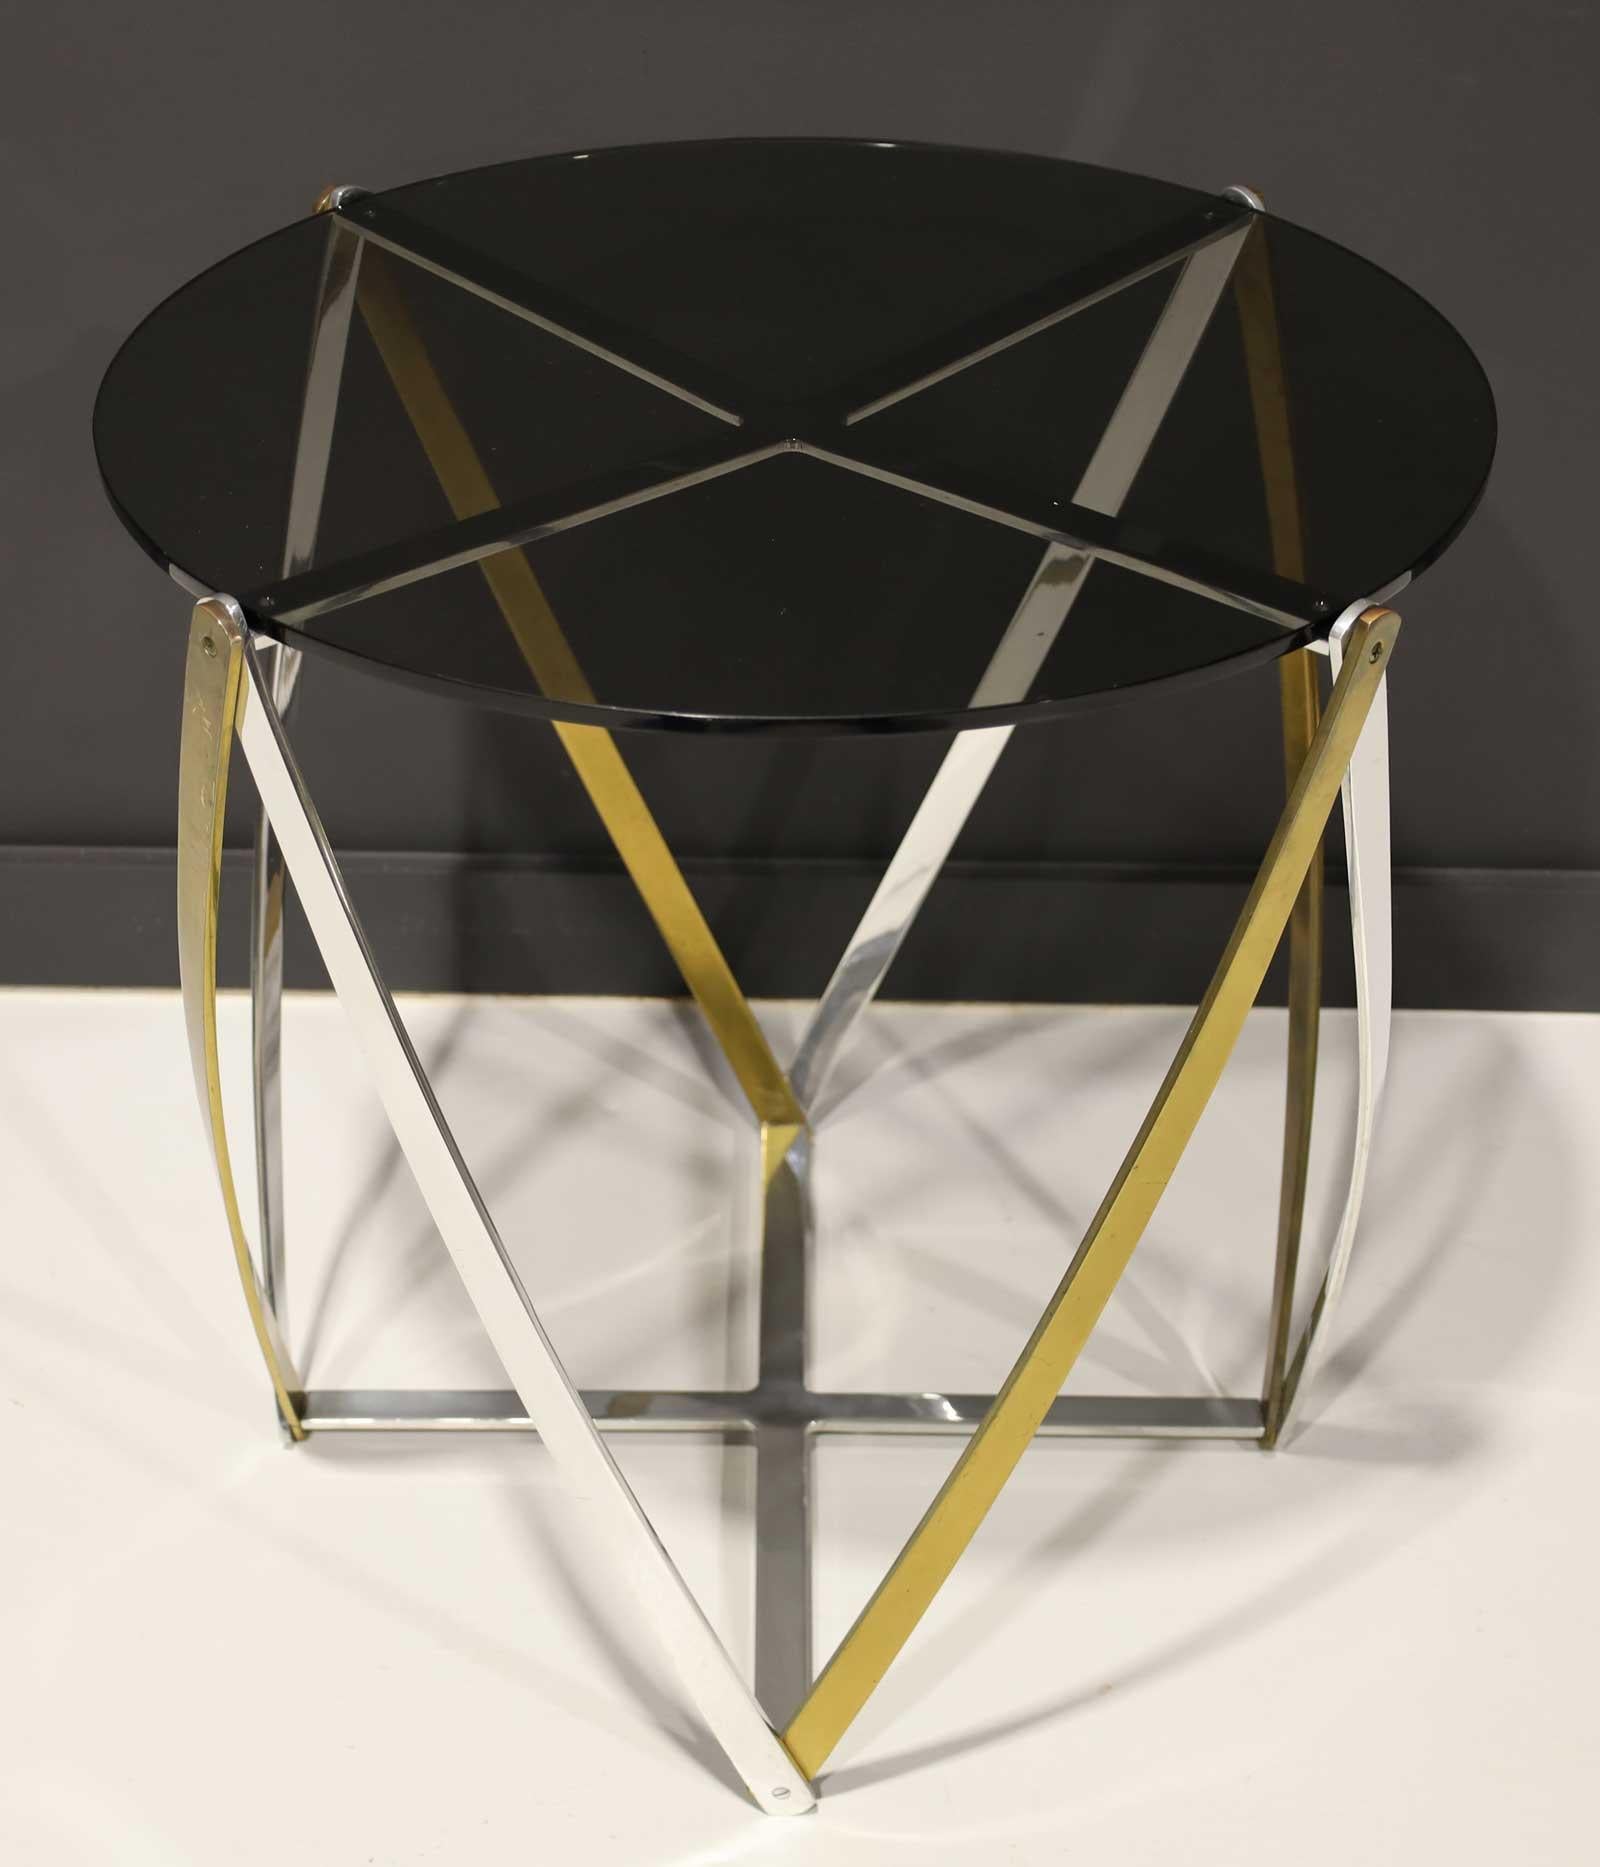 Magnifique table d'appoint de John Vesey, connu pour la qualité de son design. Les métaux mélangés ajoutent de l'intérêt à la table.